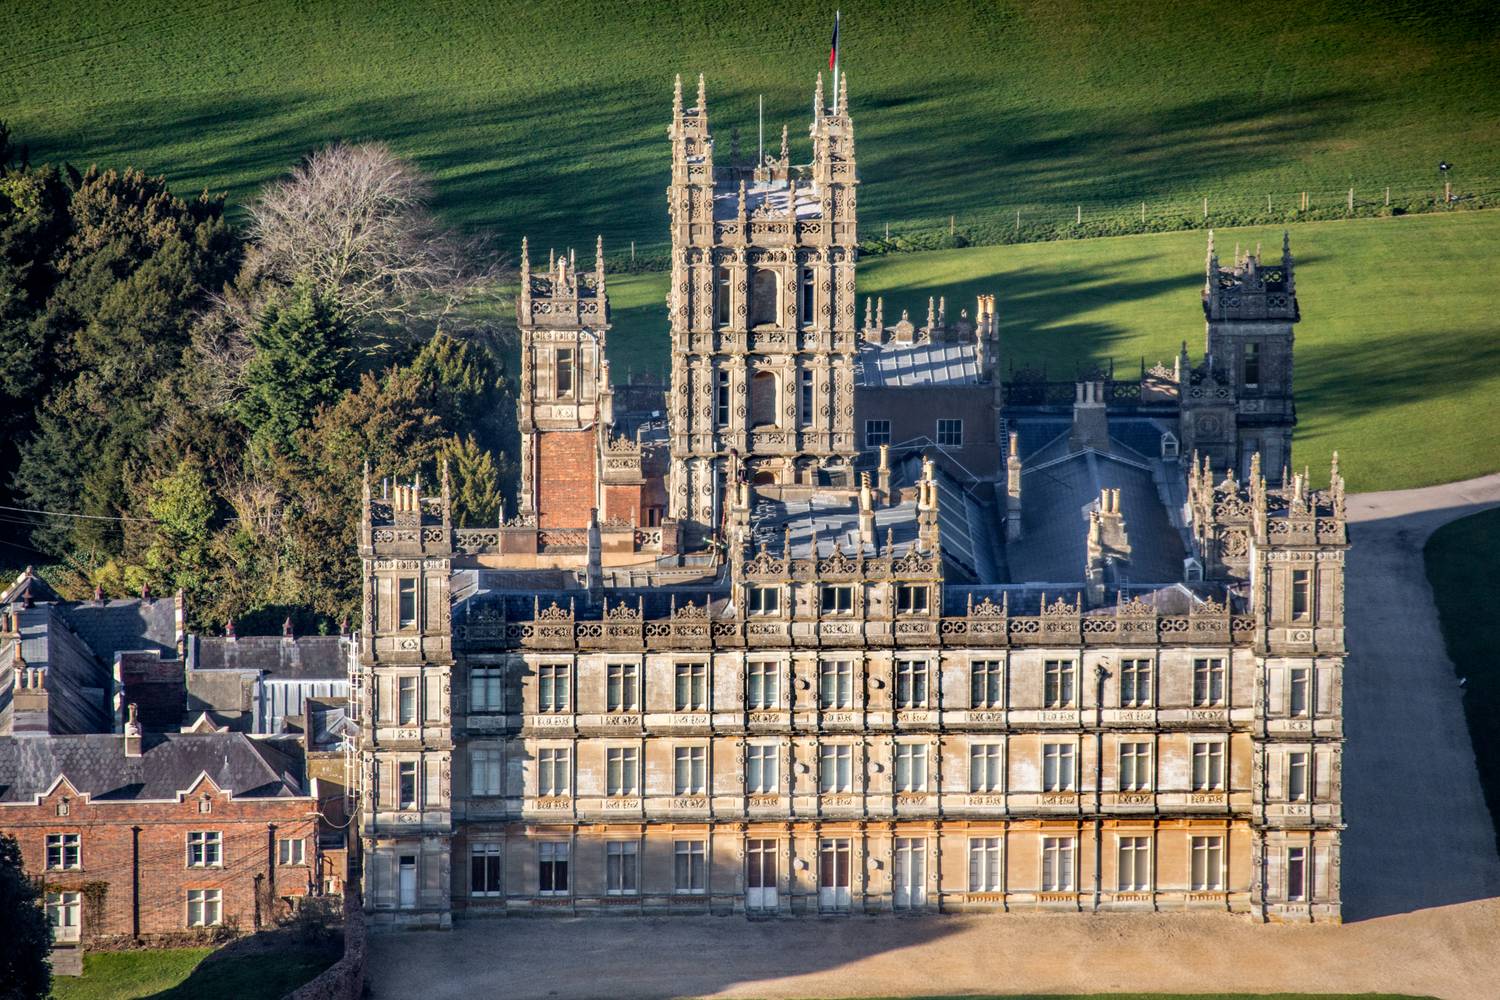 A népszerű brit sorozat, a Downtown Abbey forgatási helyszínéül szolgáló Highclere Castle lett az összesített győztes, ami több mint 585 ezer posztot számlál az Instagramon.